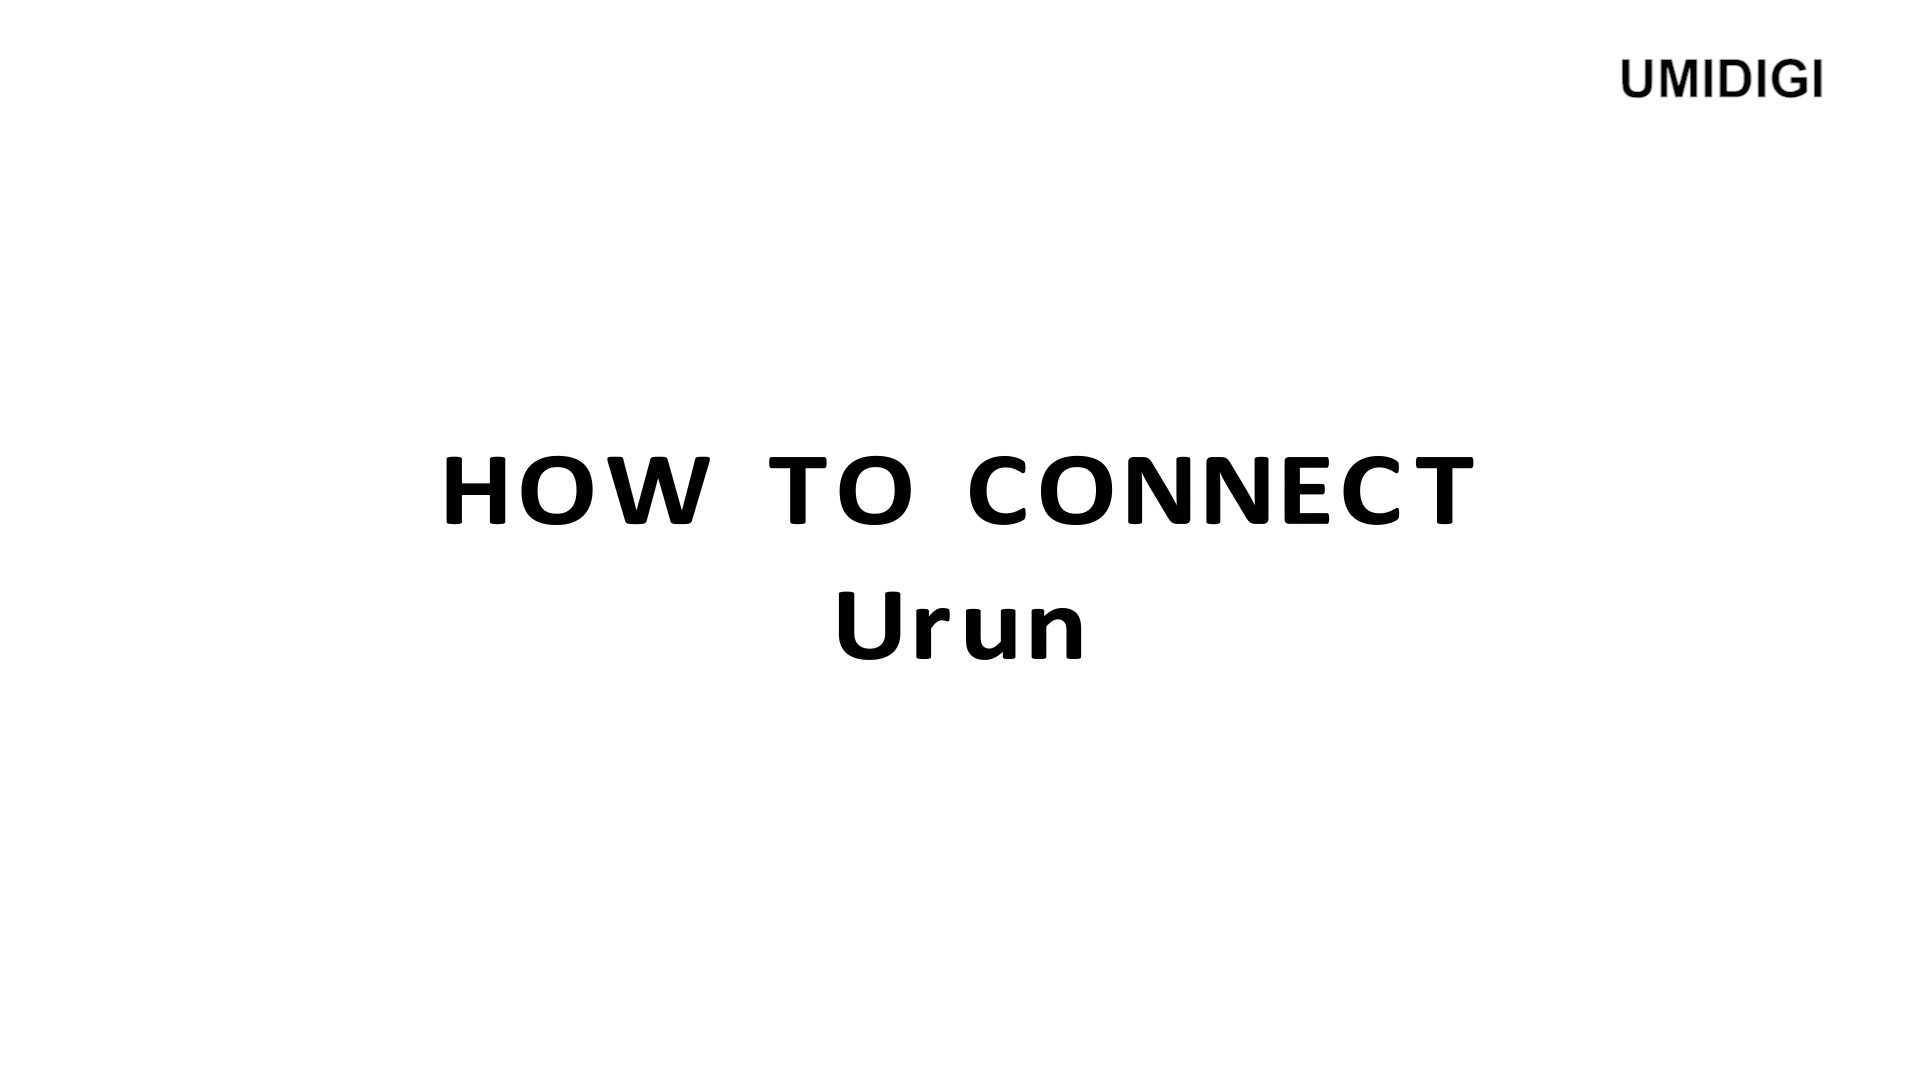 智能手机品牌UMIDIGI Urun操作指南